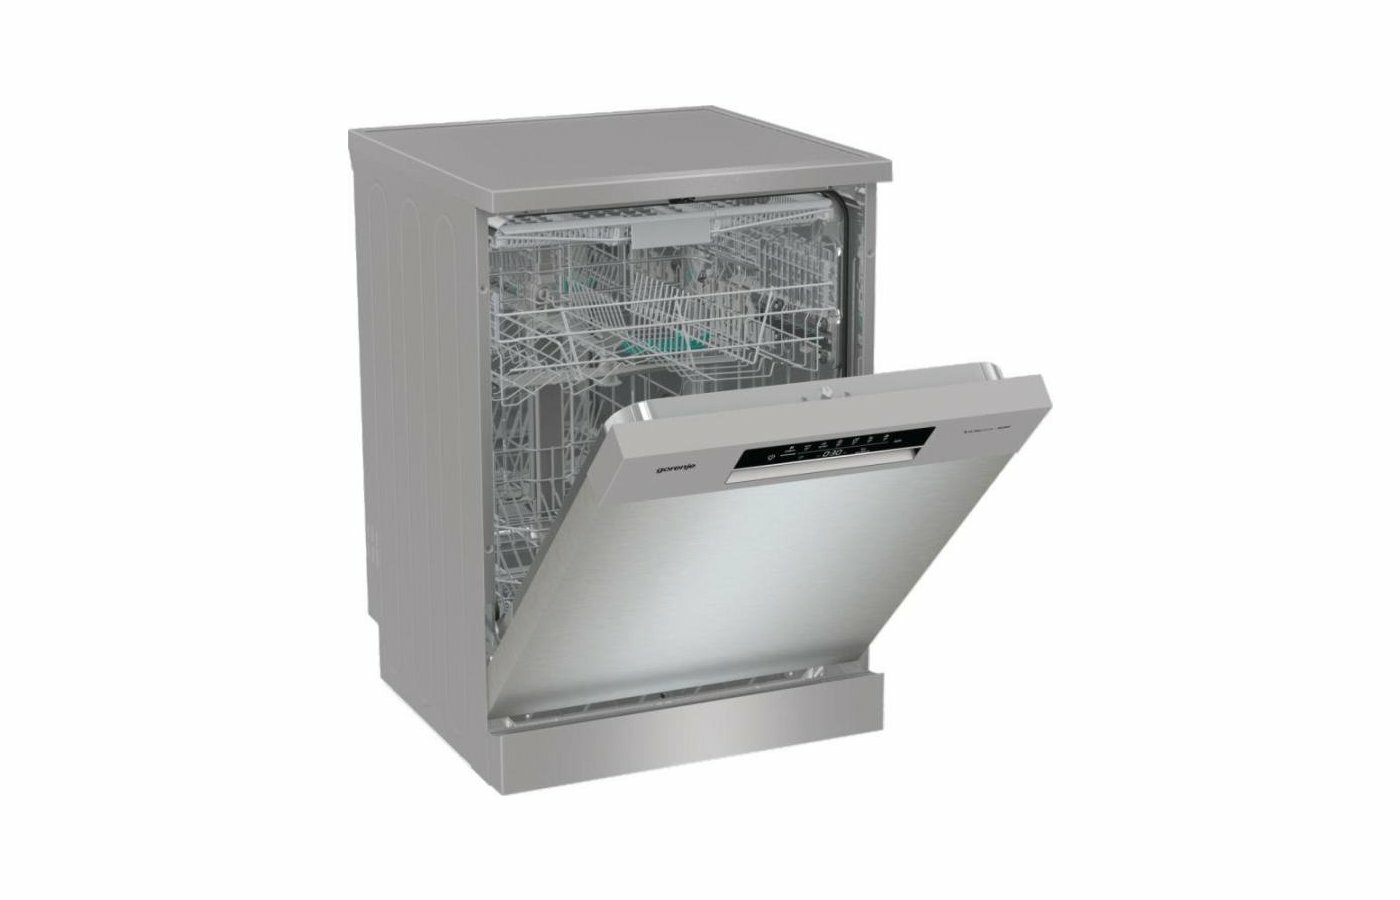 Посудомоечная машина Gorenje GS643D90X, класс энергопотребления A+++, 16 комплектов, автооткрывание дверцы TotalDry, полный AquaStop, отсрочка старта 24 ч, самоочистка, серебристый